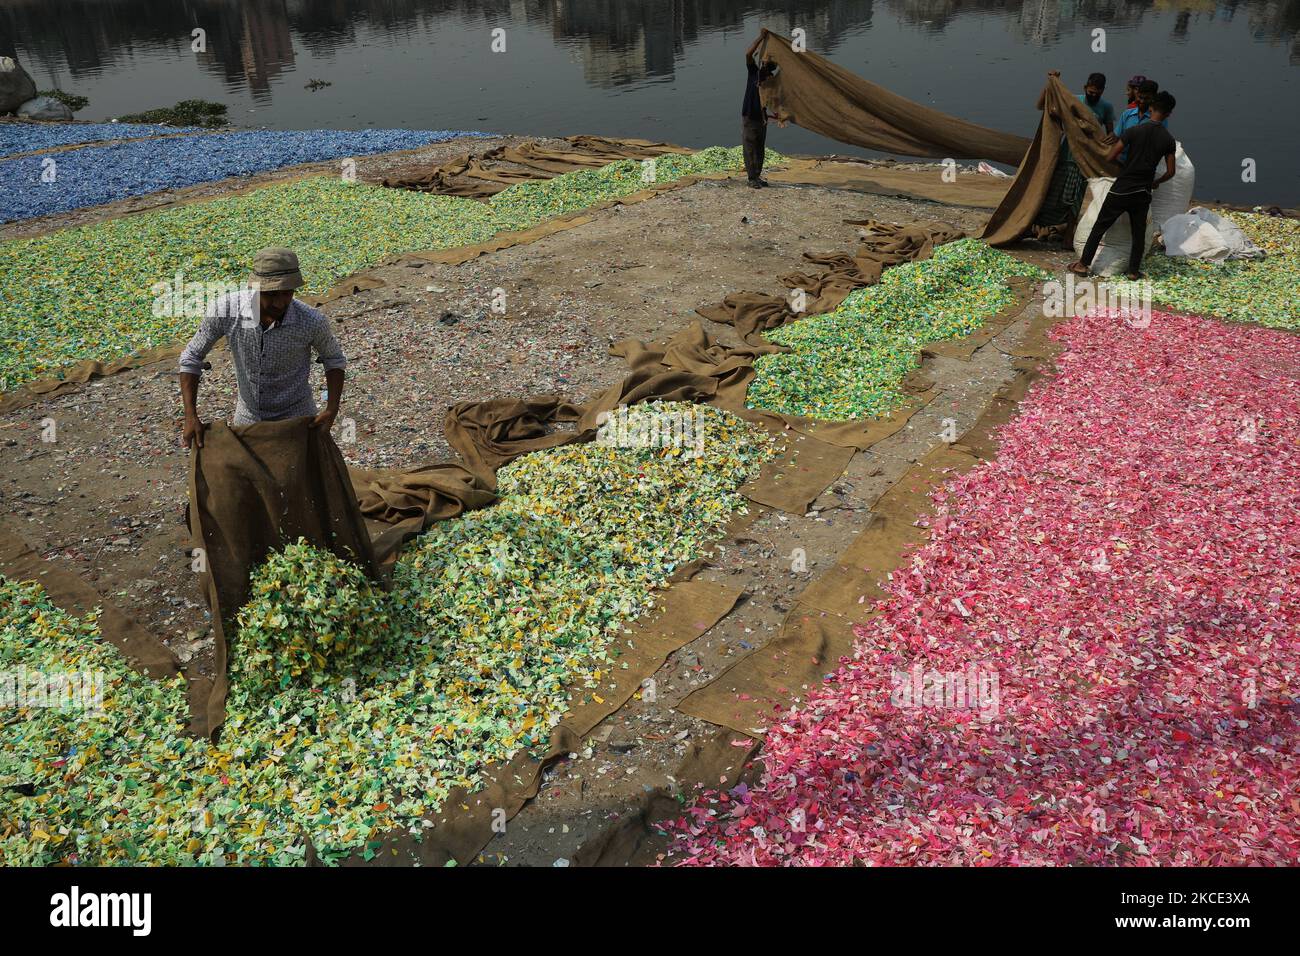 Nach dem Waschen am 05. Mai 2021 im Fluss Buriganga in Dhaka, Bangladesch, verbreiteten Arbeiter recycelte Plastikspäne. Der Buriganga-Fluss, der durch die Stadt Dhaka fließt, ist heute einer der am stärksten verschmutzten Flüsse der Welt, weil dort Menschen und Industrieabfällen in die Luft gedumpt werden. (Foto von Syed Mahamudur Rahman/NurPhoto) Stockfoto